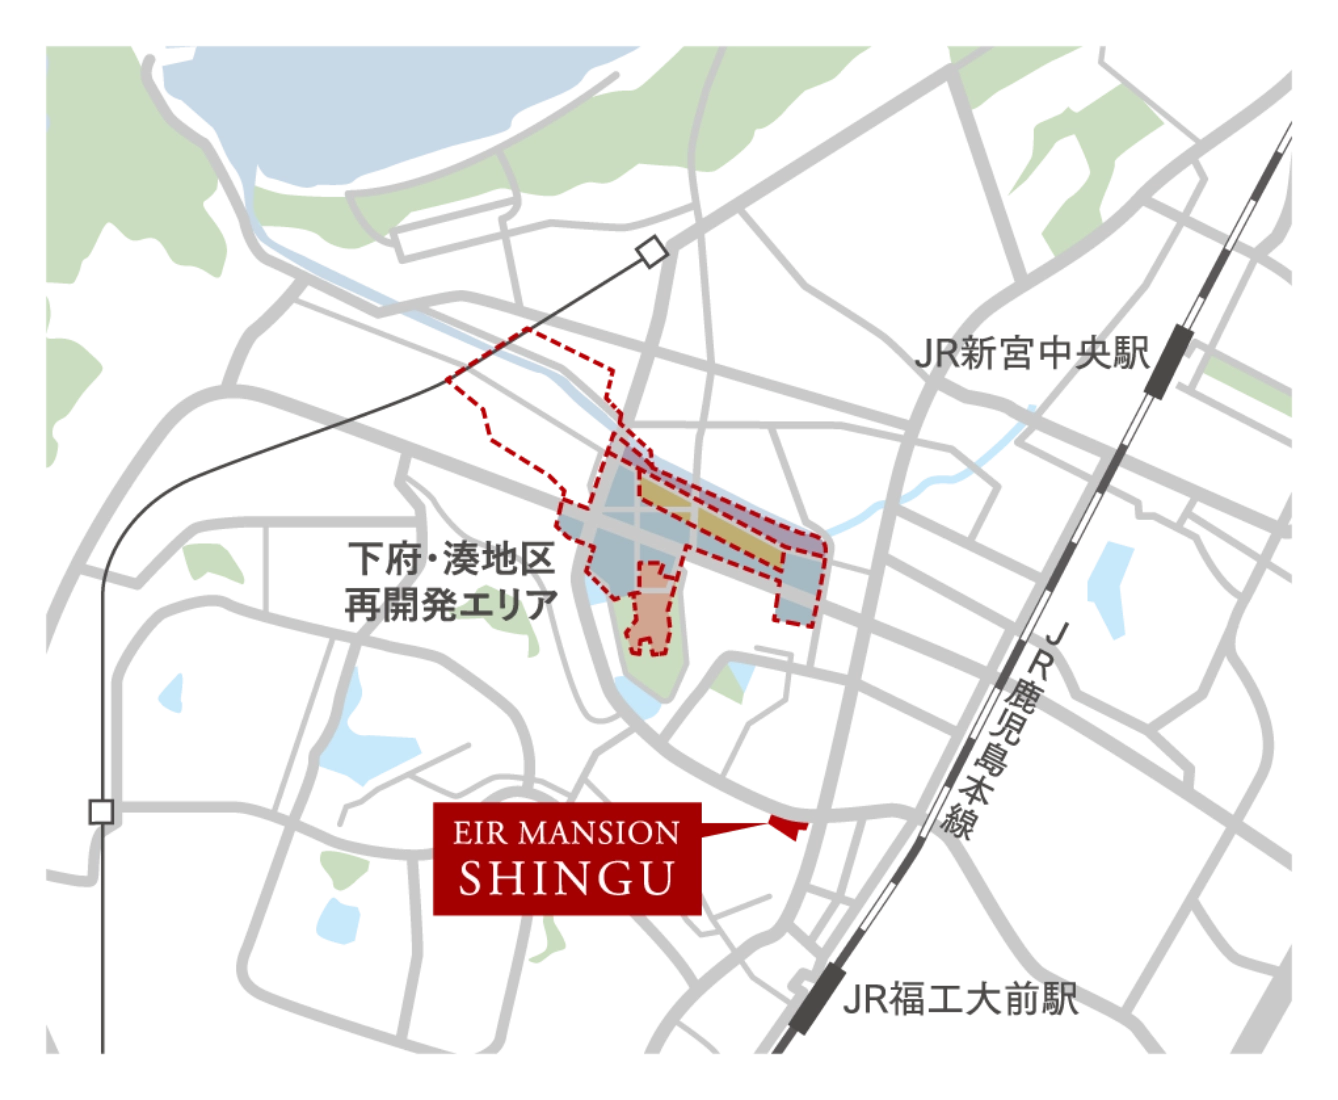 エイルマンション新宮と下府・湊地区再開発エリアの位置関係を表したマップ